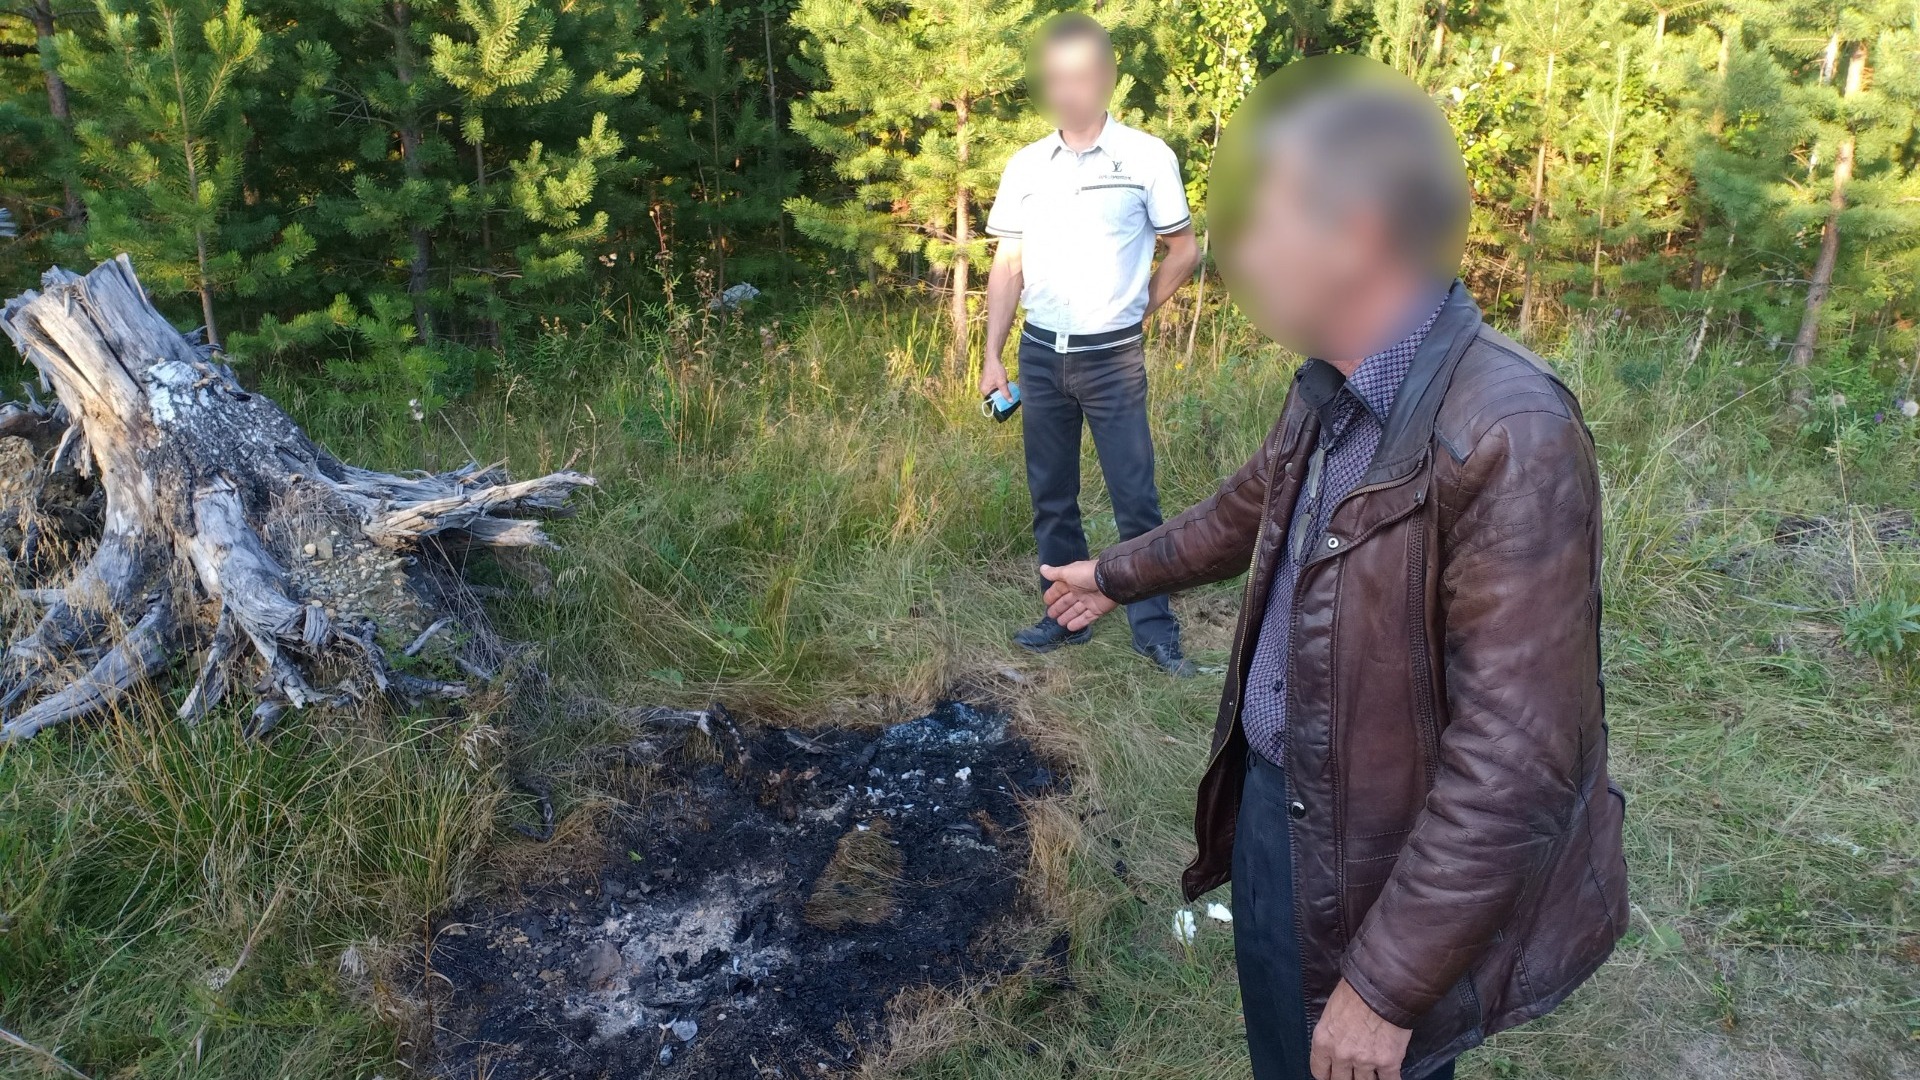 Глава предприятия в Свердловской области убил и сжег в лесу своего сотрудника